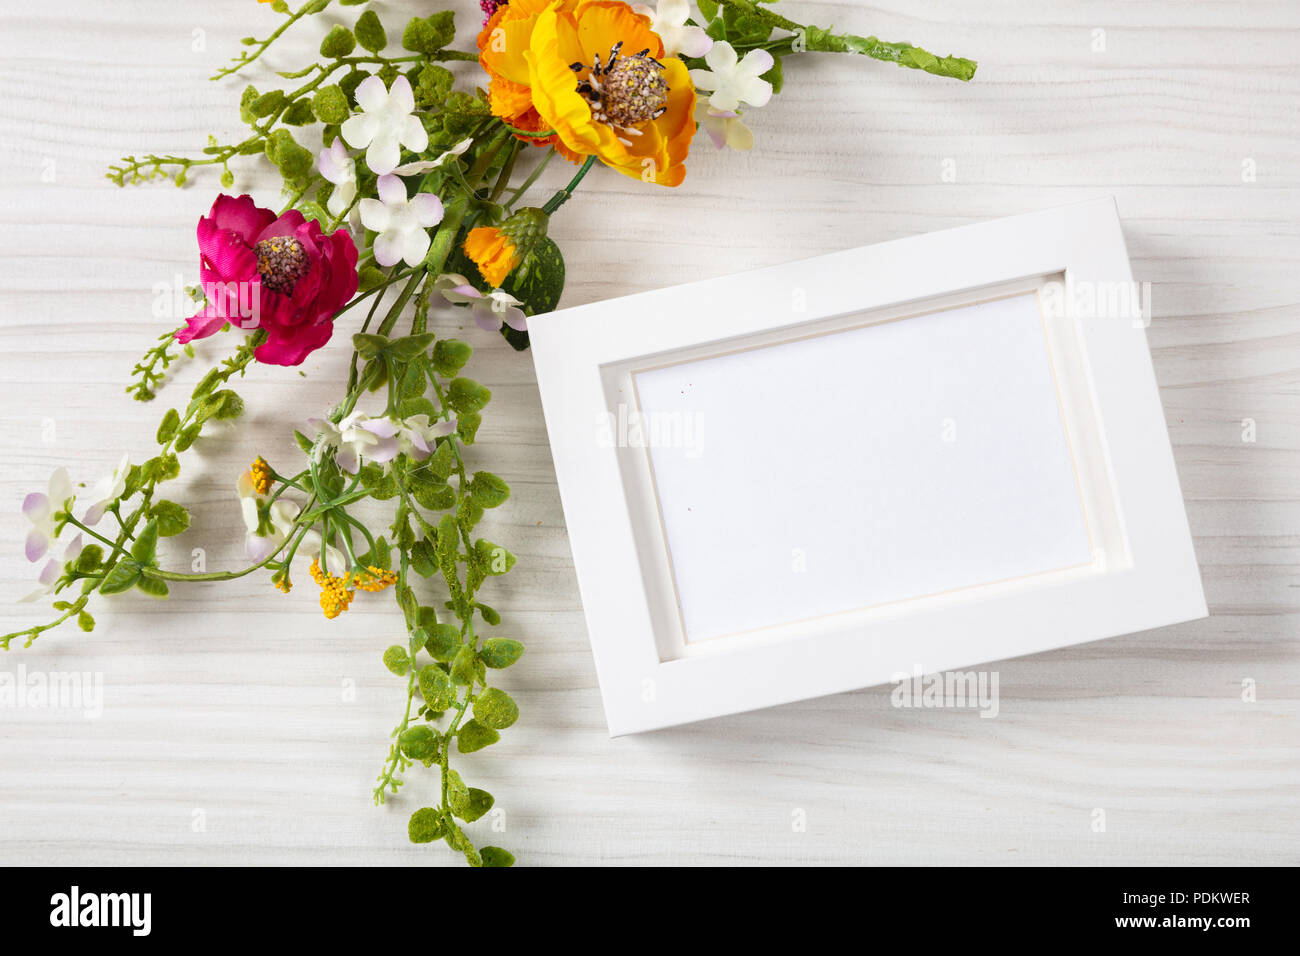 Blumenstrauß und einen leeren weißen Bilderrahmen, Ansicht von oben, kopieren, auf einem weißen Holz- Hintergrund. Stockfoto